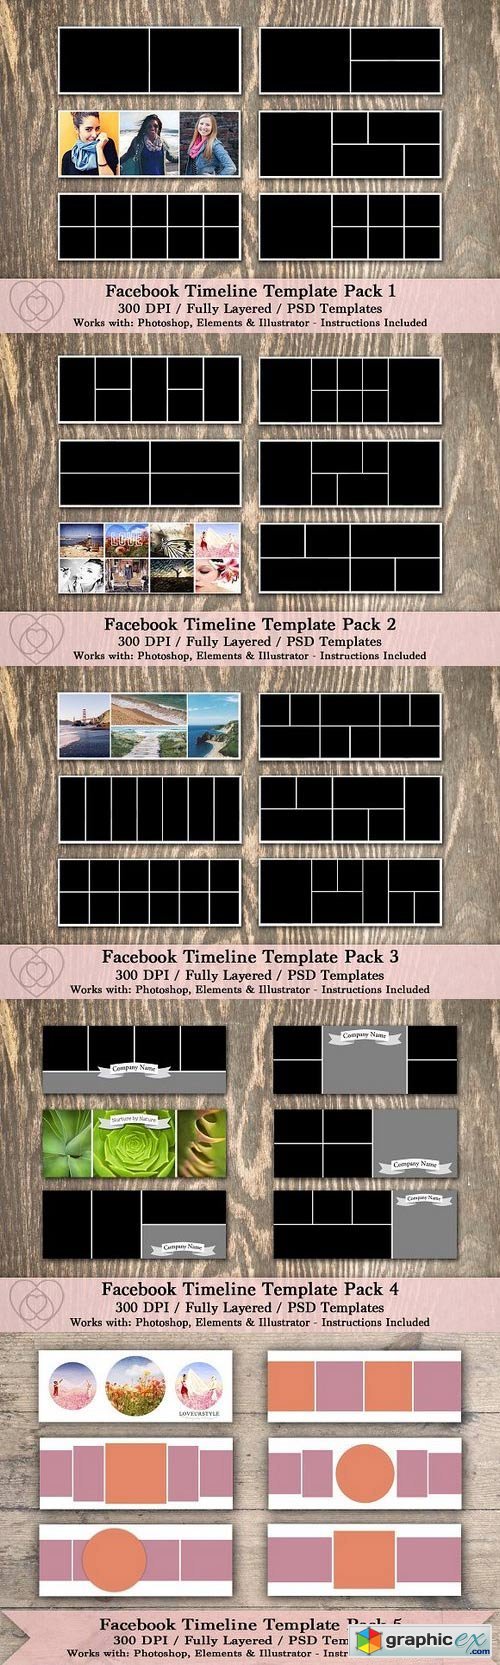 Facebook Timeline Template Pack